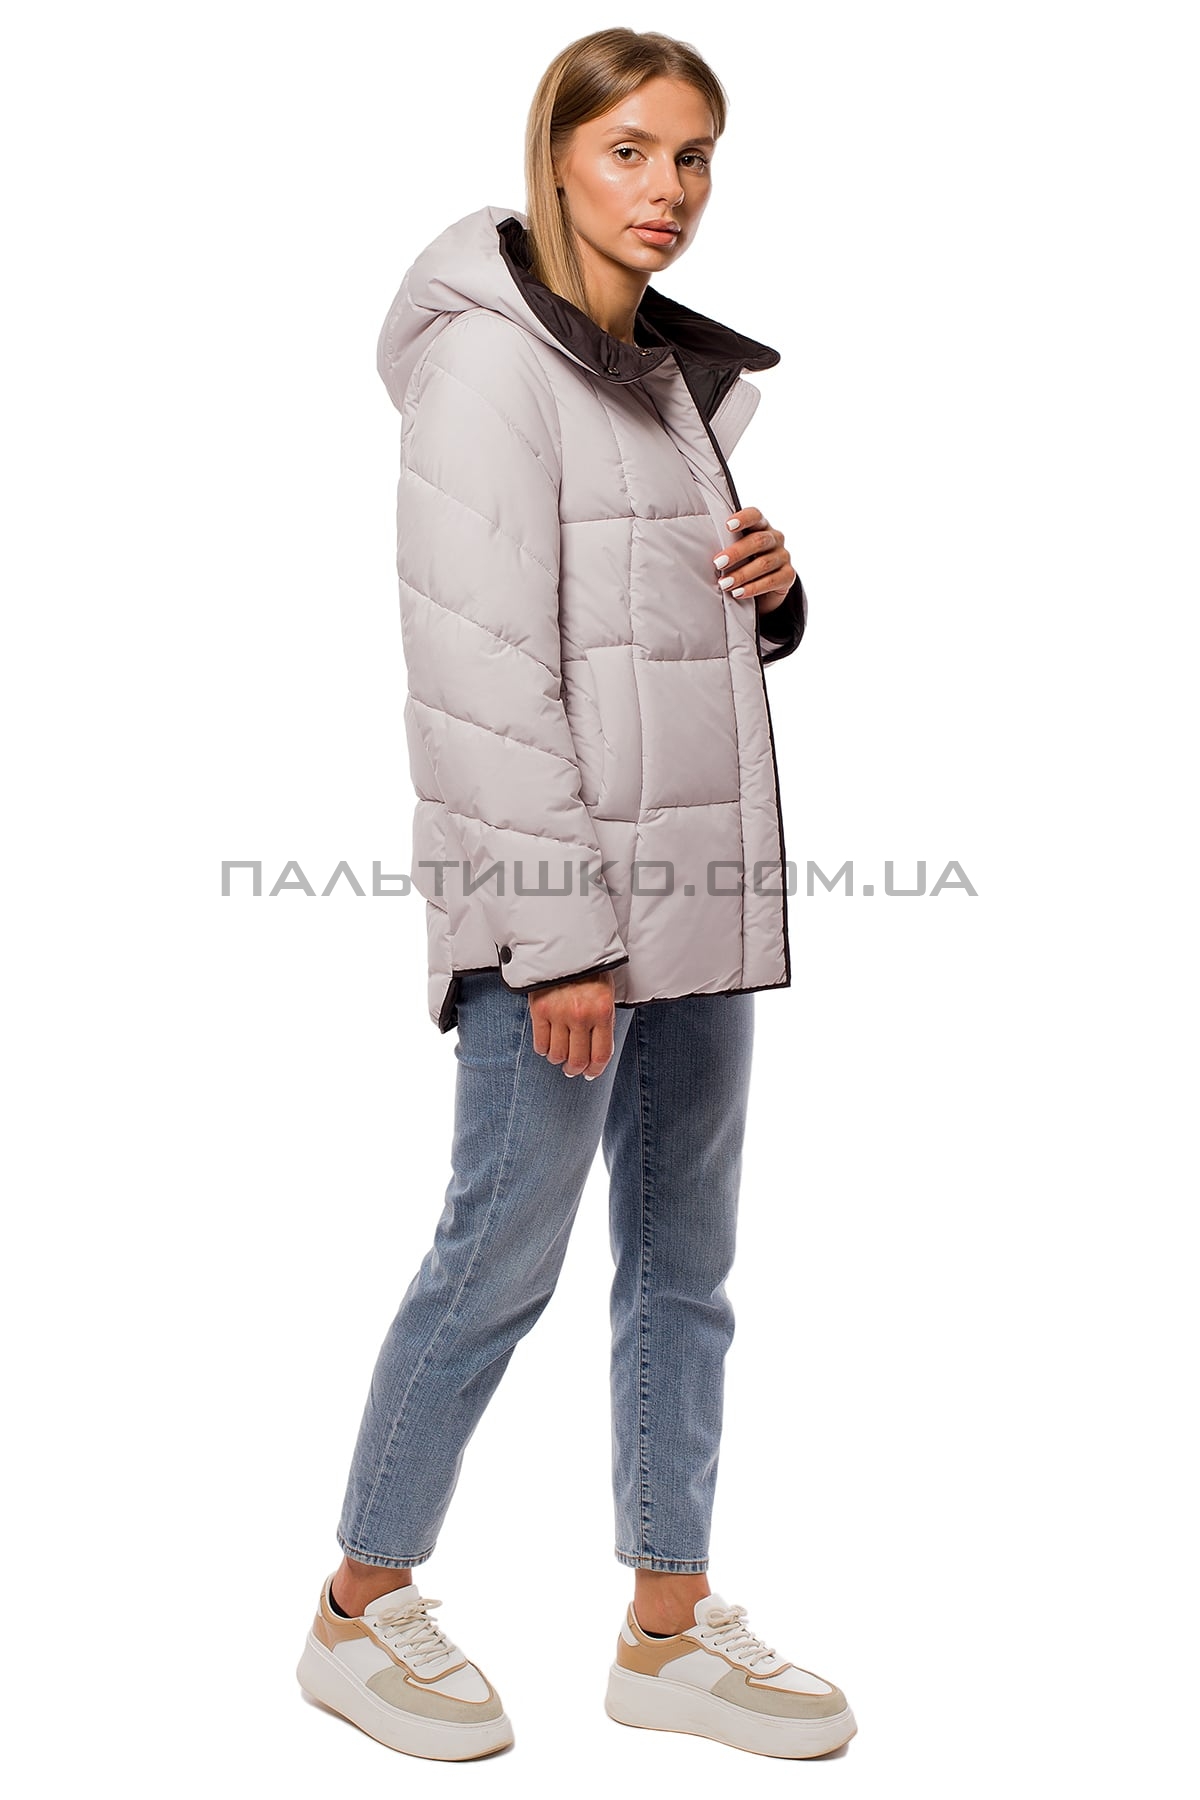  Зимняя женская куртка черно-белая